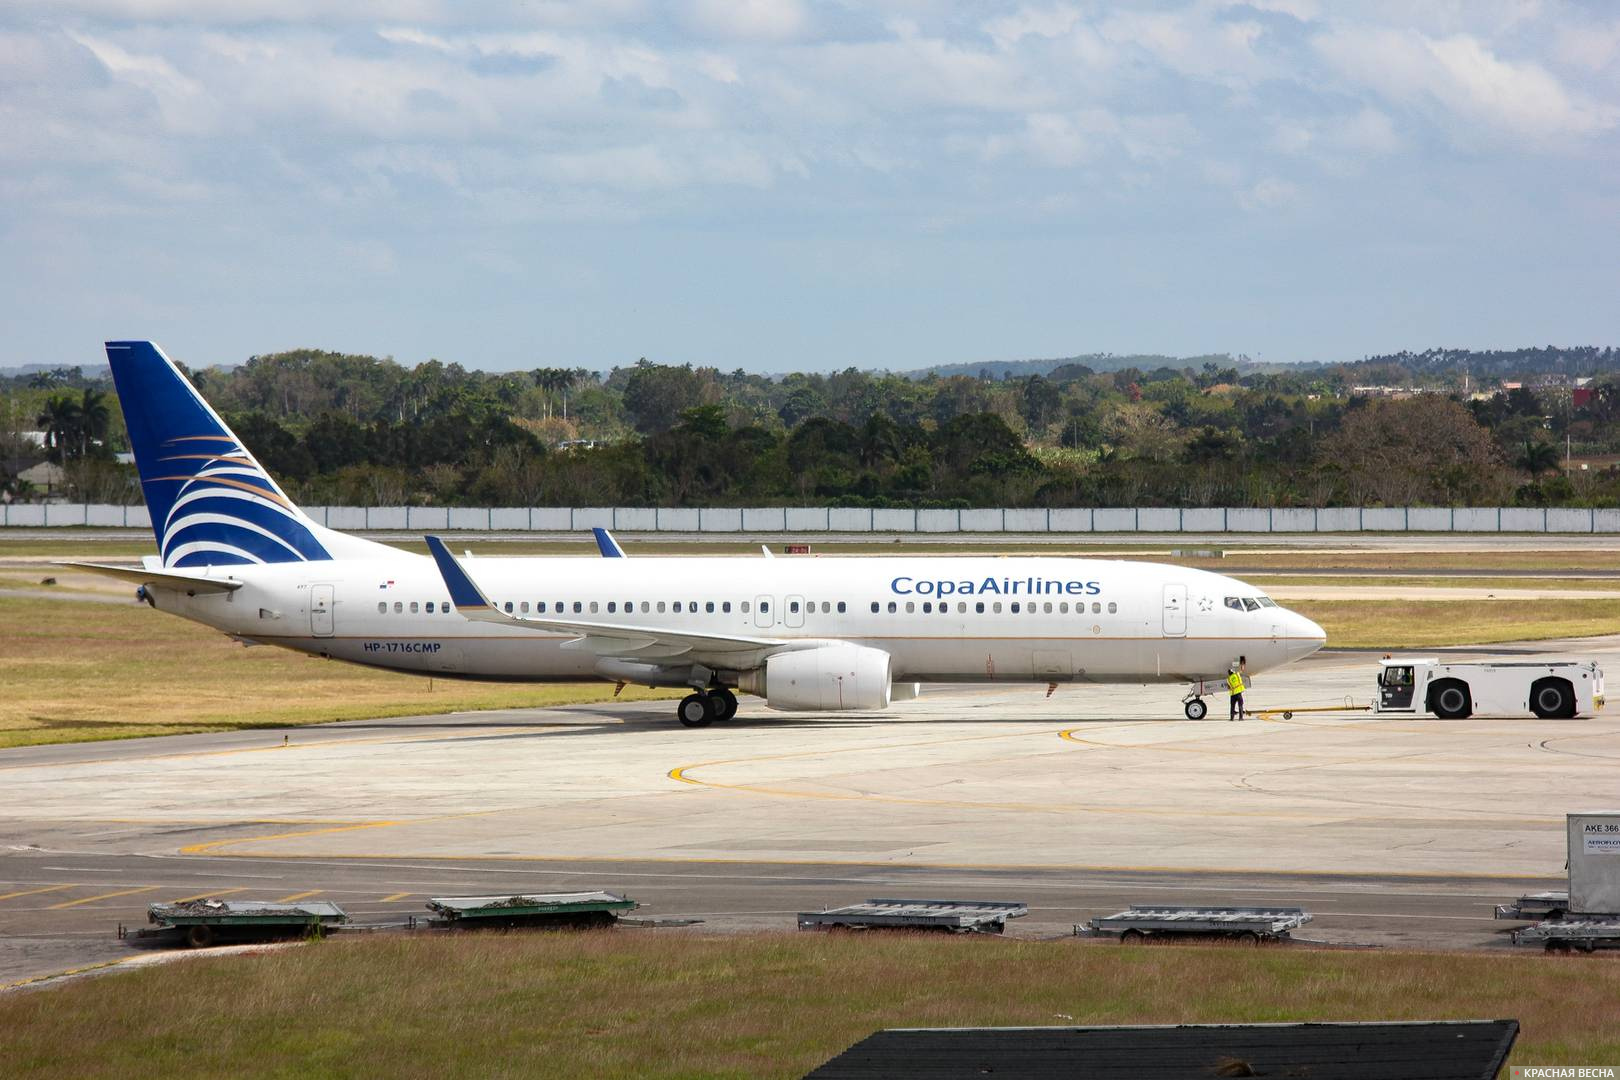 Пассажирский самолет панамских авиалиний на взлетно-посадочной полосе в аэропорту Хосе-Марти г. Гавана